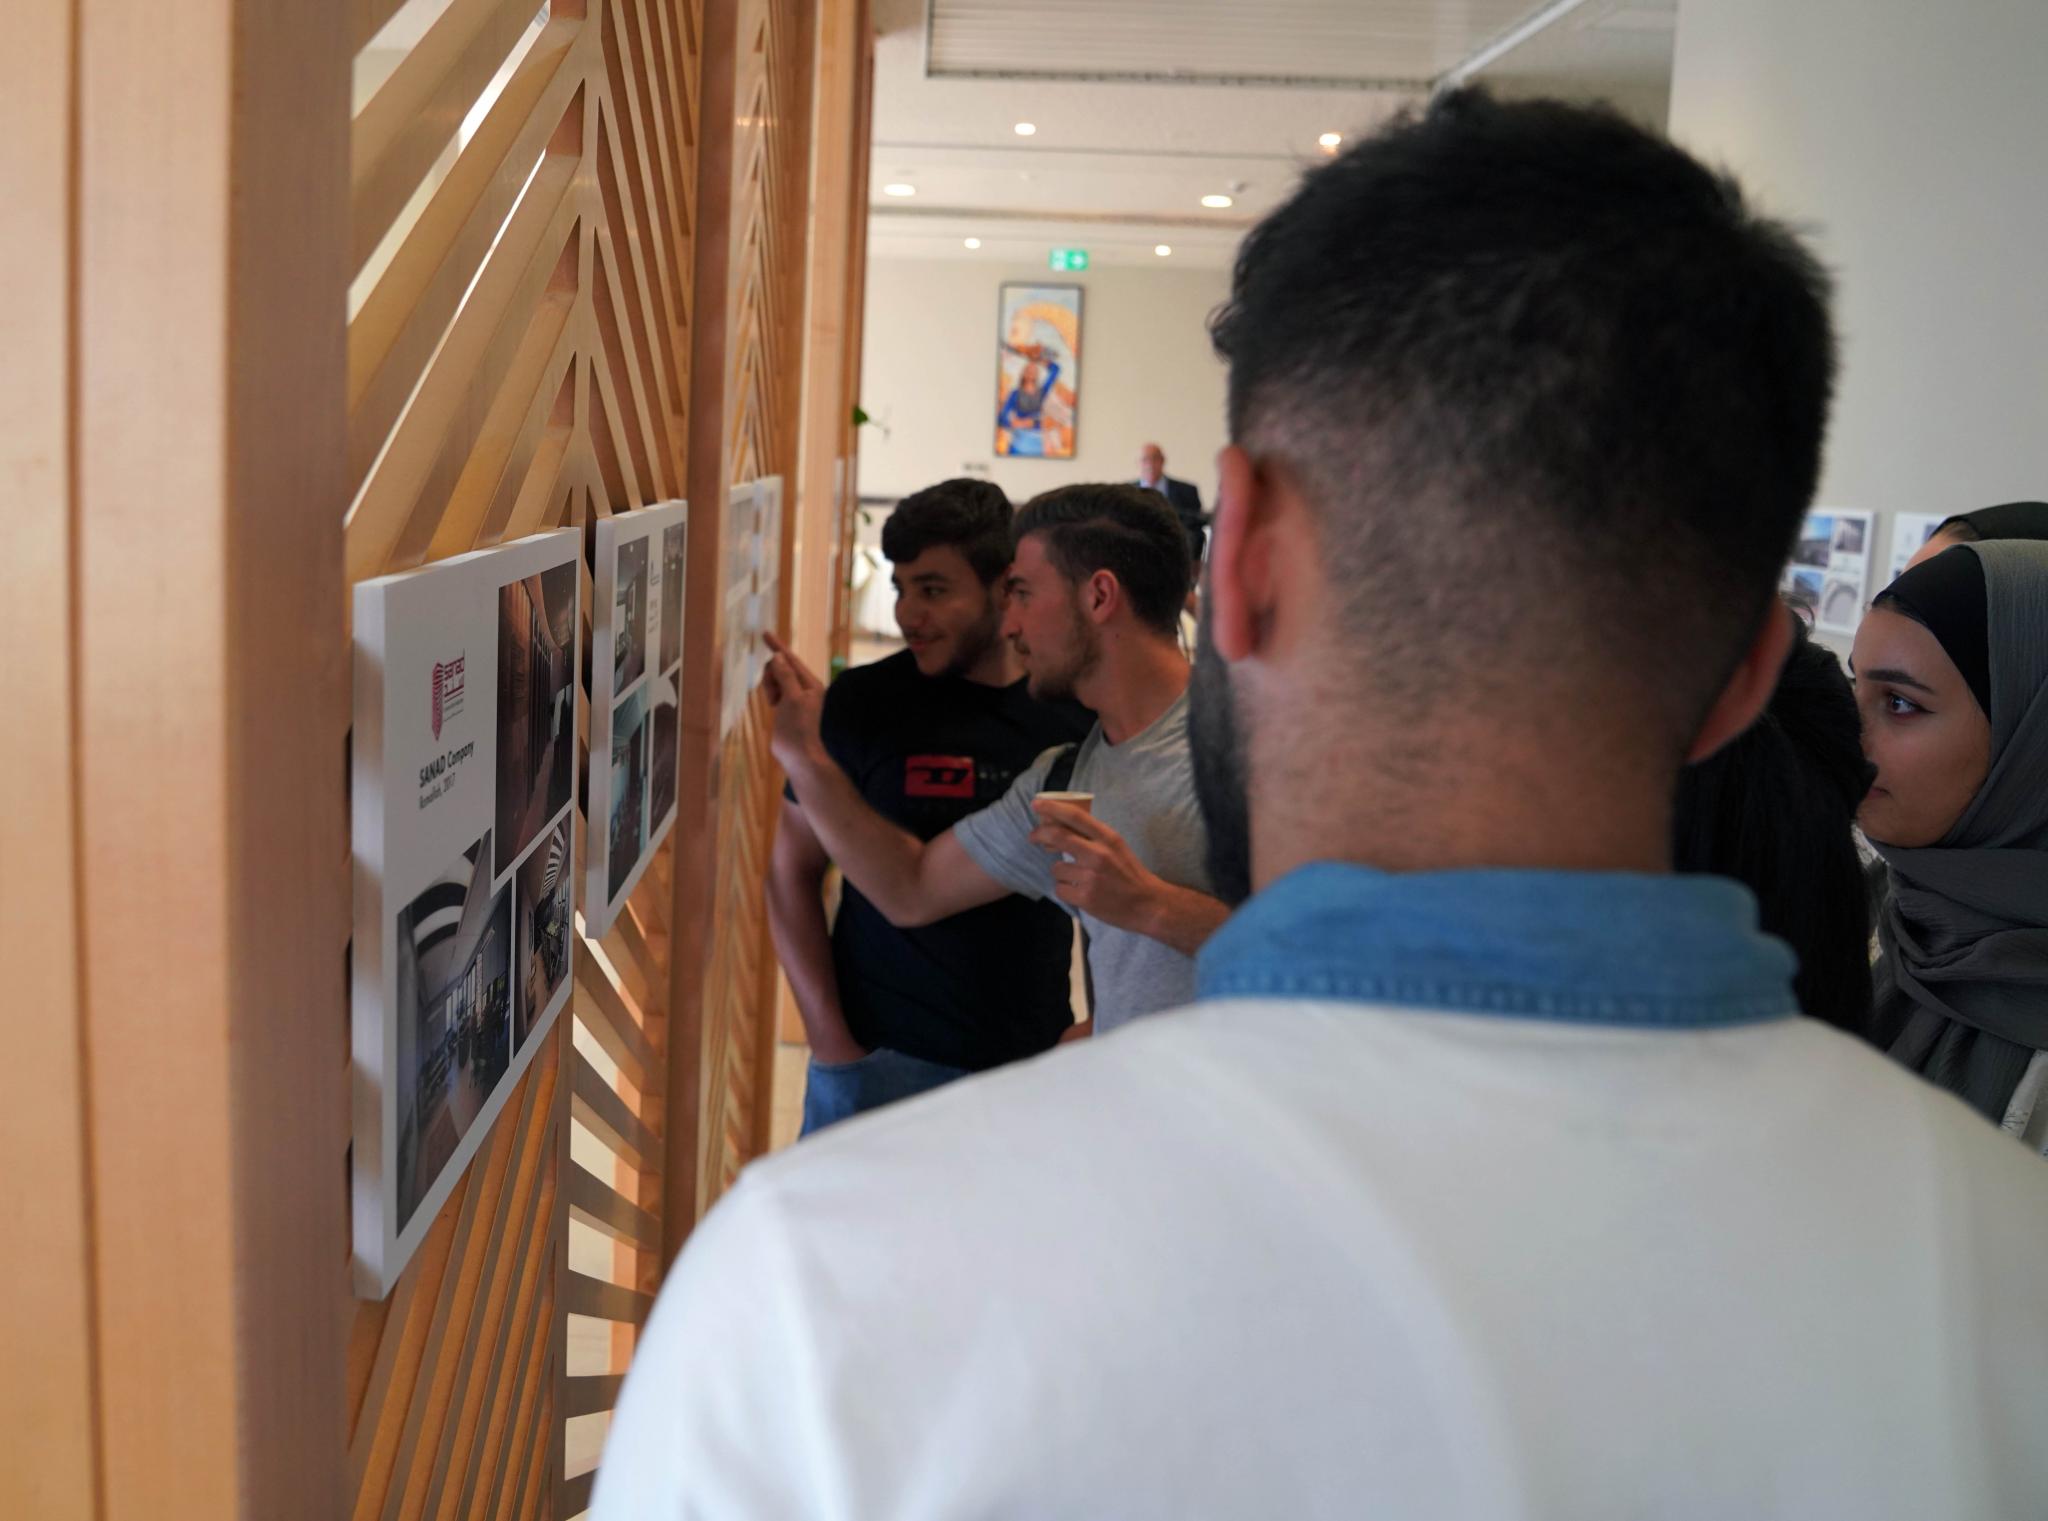  الجامعة تنظم معرض الفنانين الإيطالي فيكو ماجستريت والفلسطيني فيكتور غطاس في العمارة الداخلية